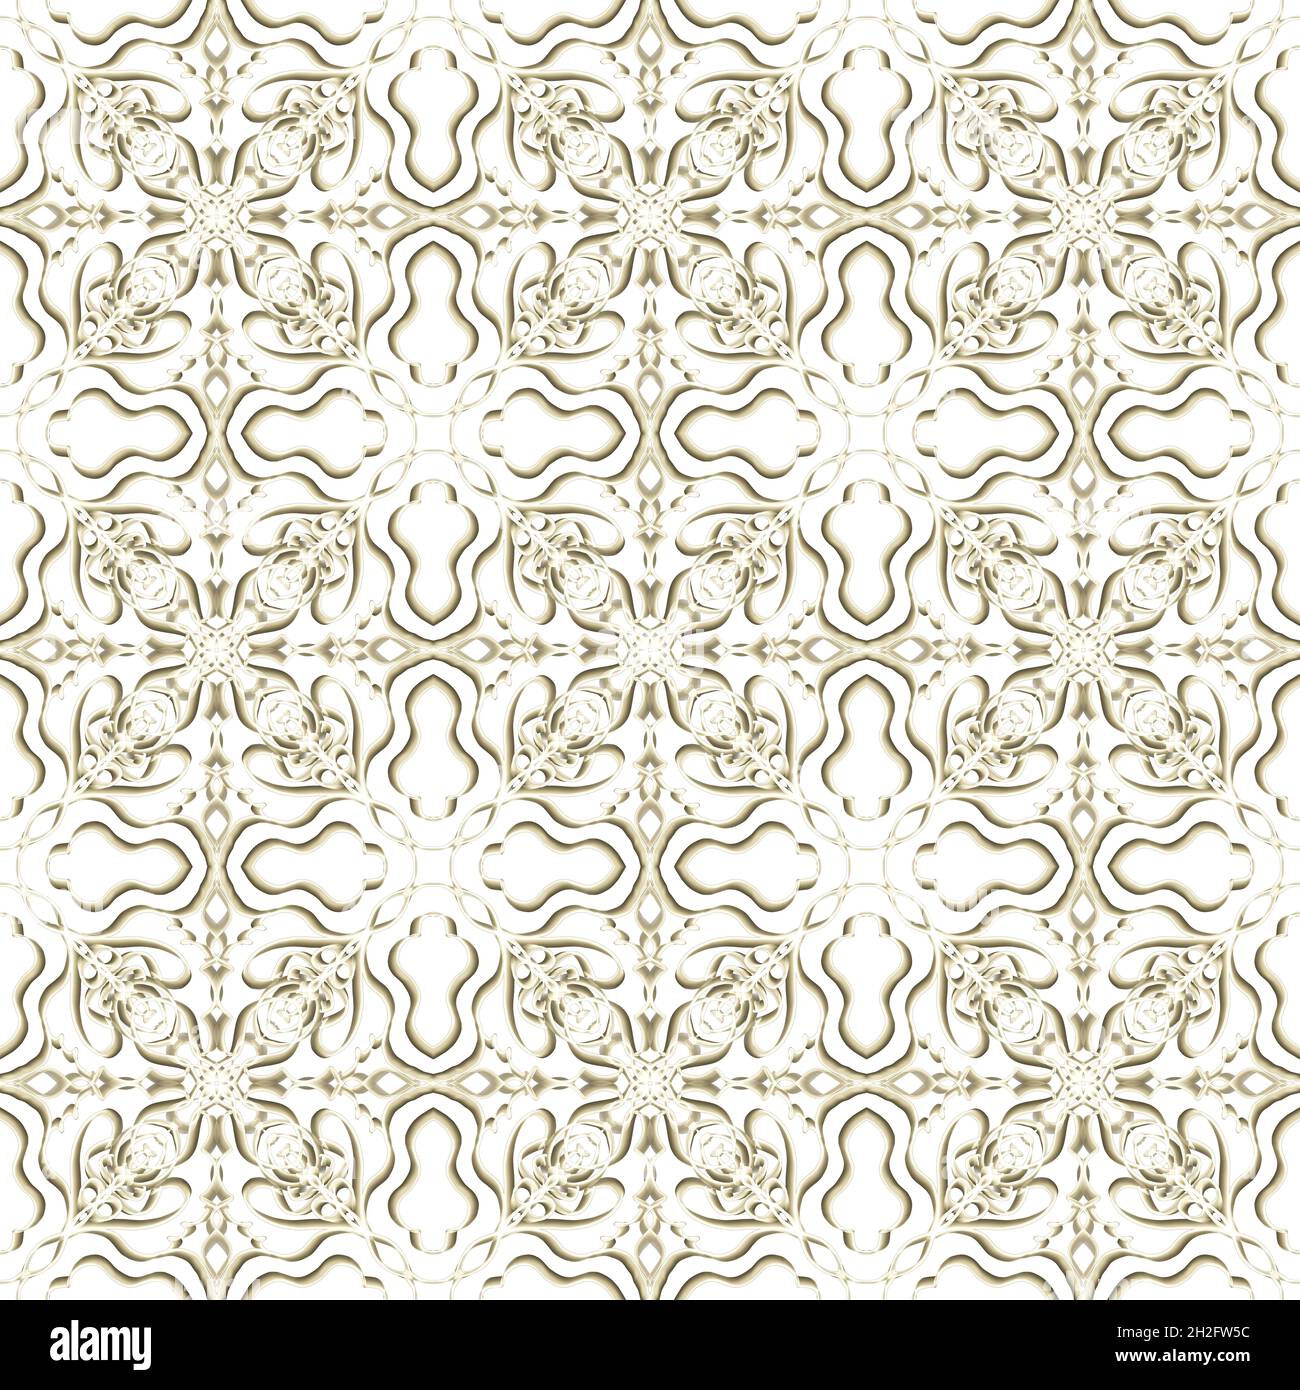 Nahtlose abstrakte geometrische florale Oberfläche Muster in goldener Farbe mit symmetrischer Form horizontal und vertikal wiederholen. Für Modedesign verwenden Stockfoto